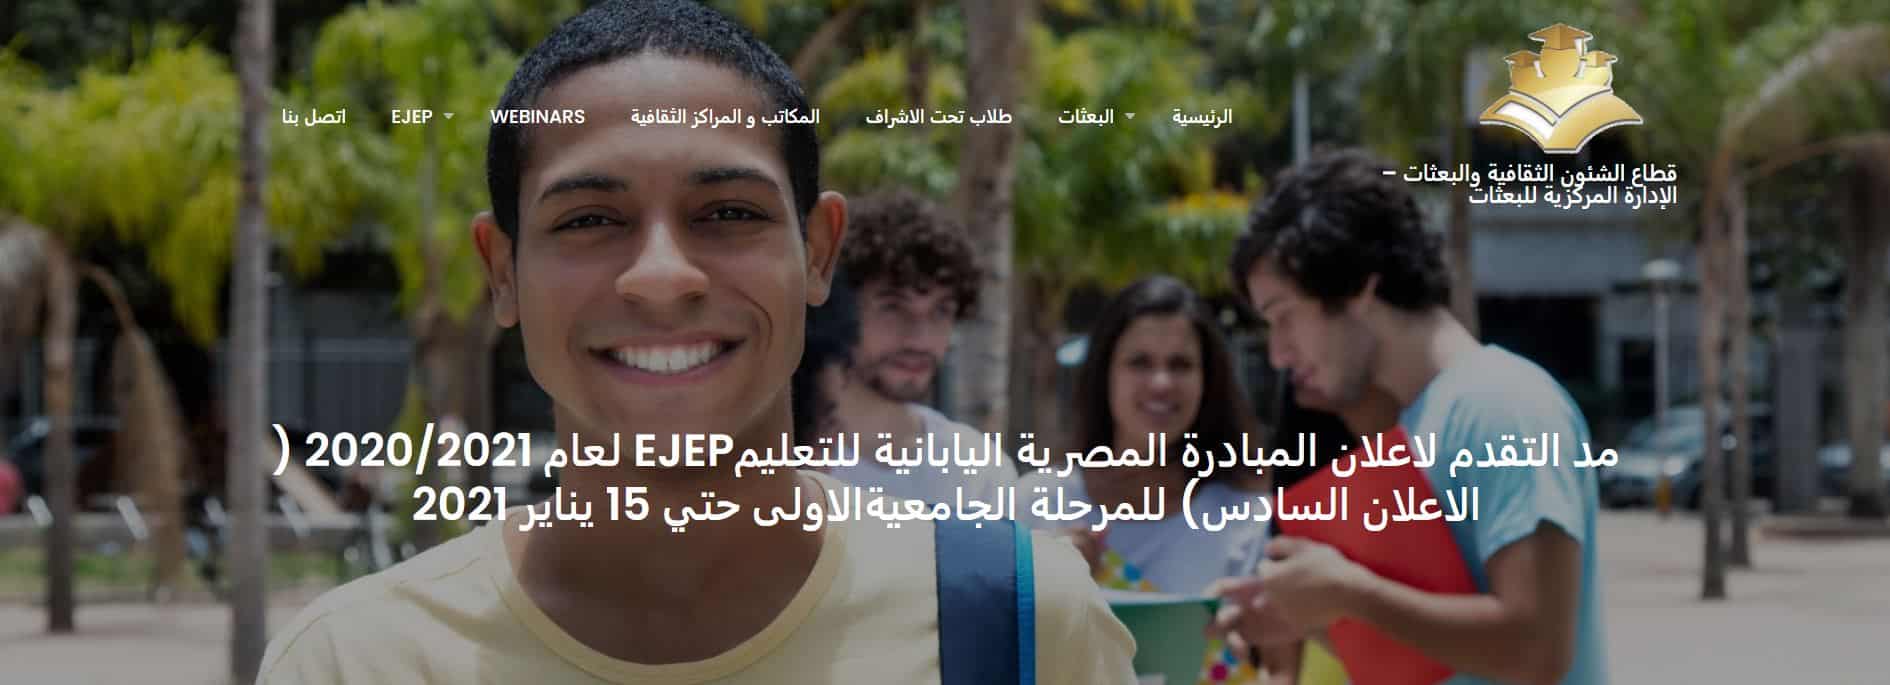 منحة المبادرة المصرية اليابانية للتعليم EJEP للمرحلة الجامعية 2021 (ممولة بالكامل)